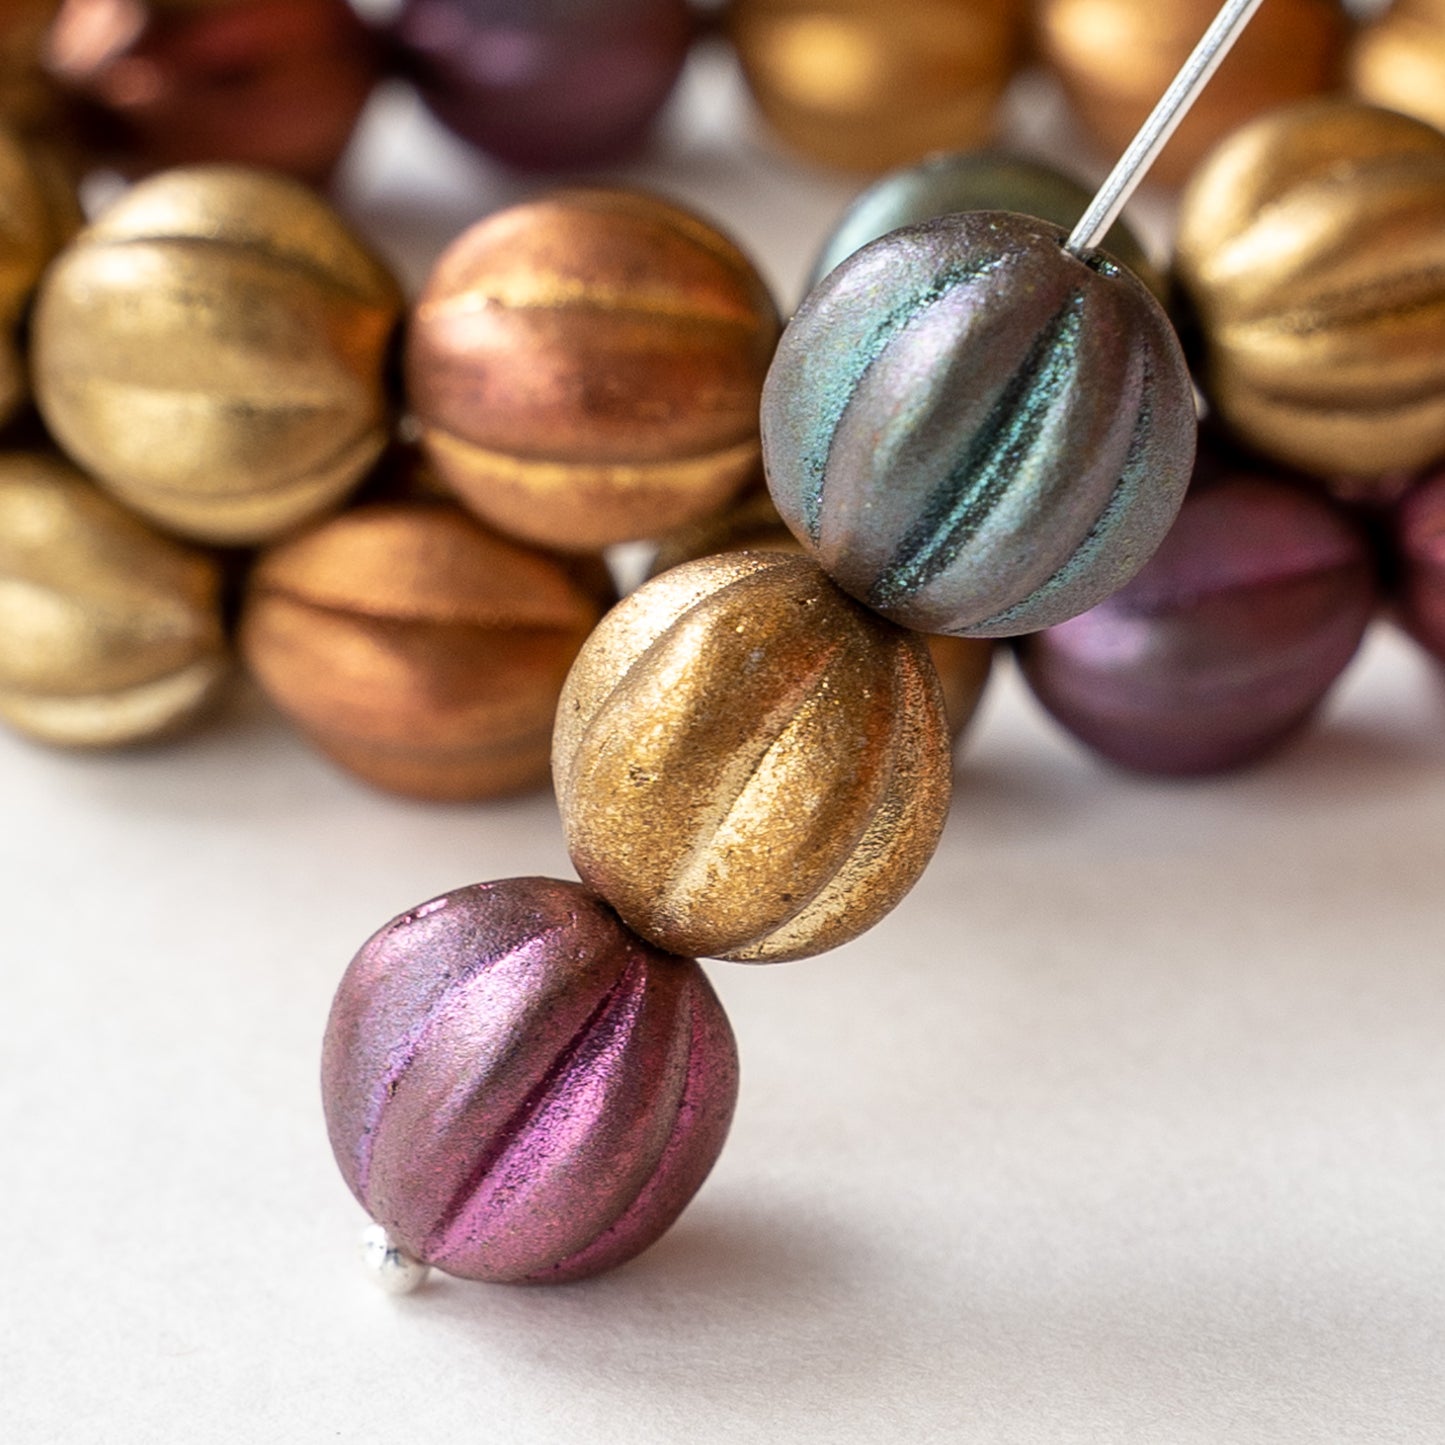 10mm Melon Beads - Metallic Bronze Iris Matte - 15 Beads